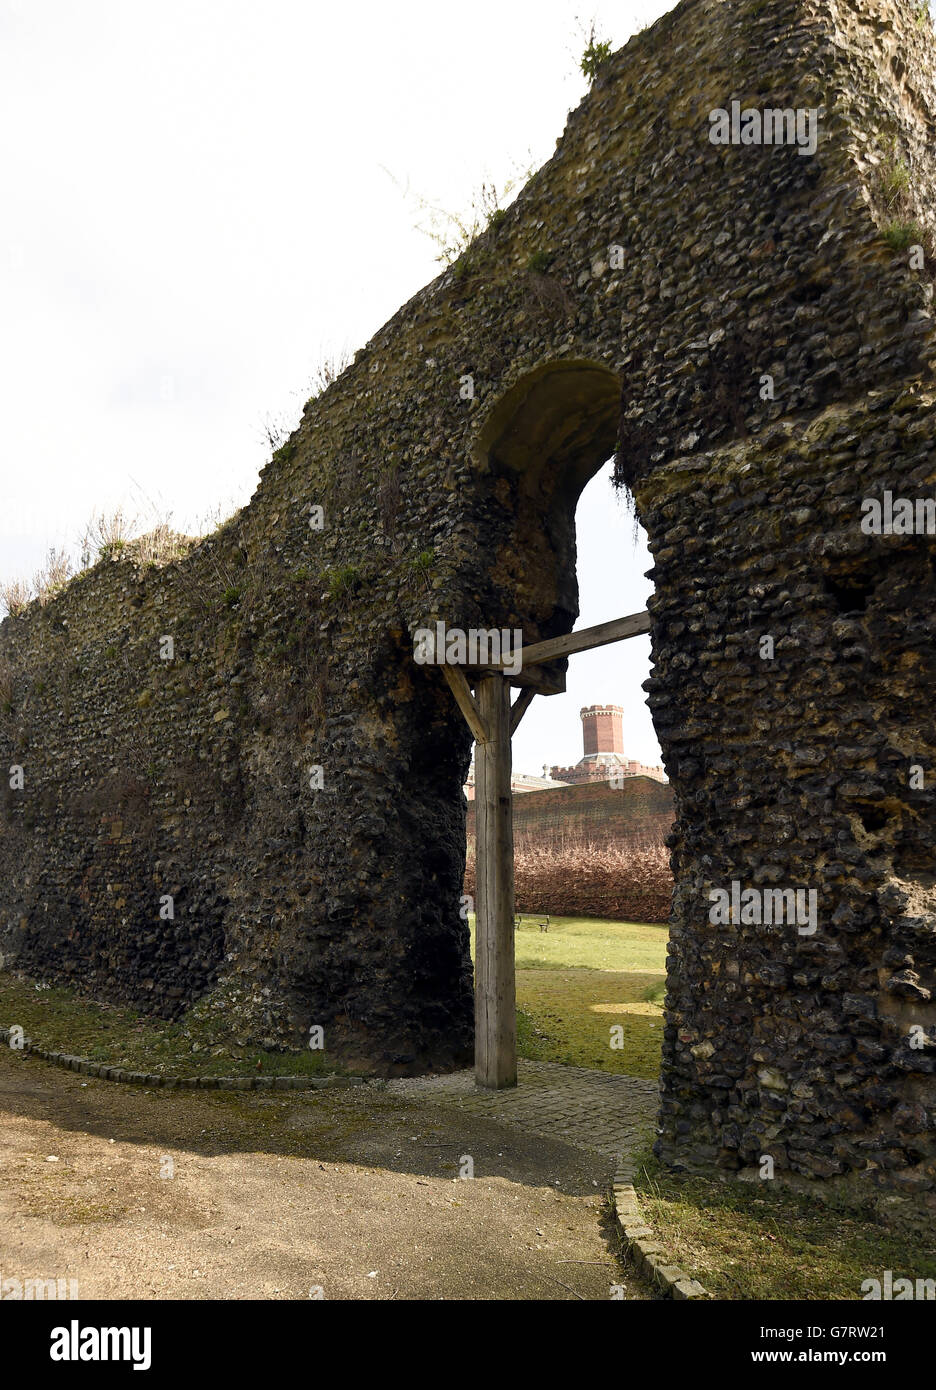 Abbey Stock Wird Gelesen. Gesamtansicht der Ruinen der Abtei von Reading im Stadtzentrum von Reading, die 1121 von Heinrich I. gegründet wurde Stockfoto